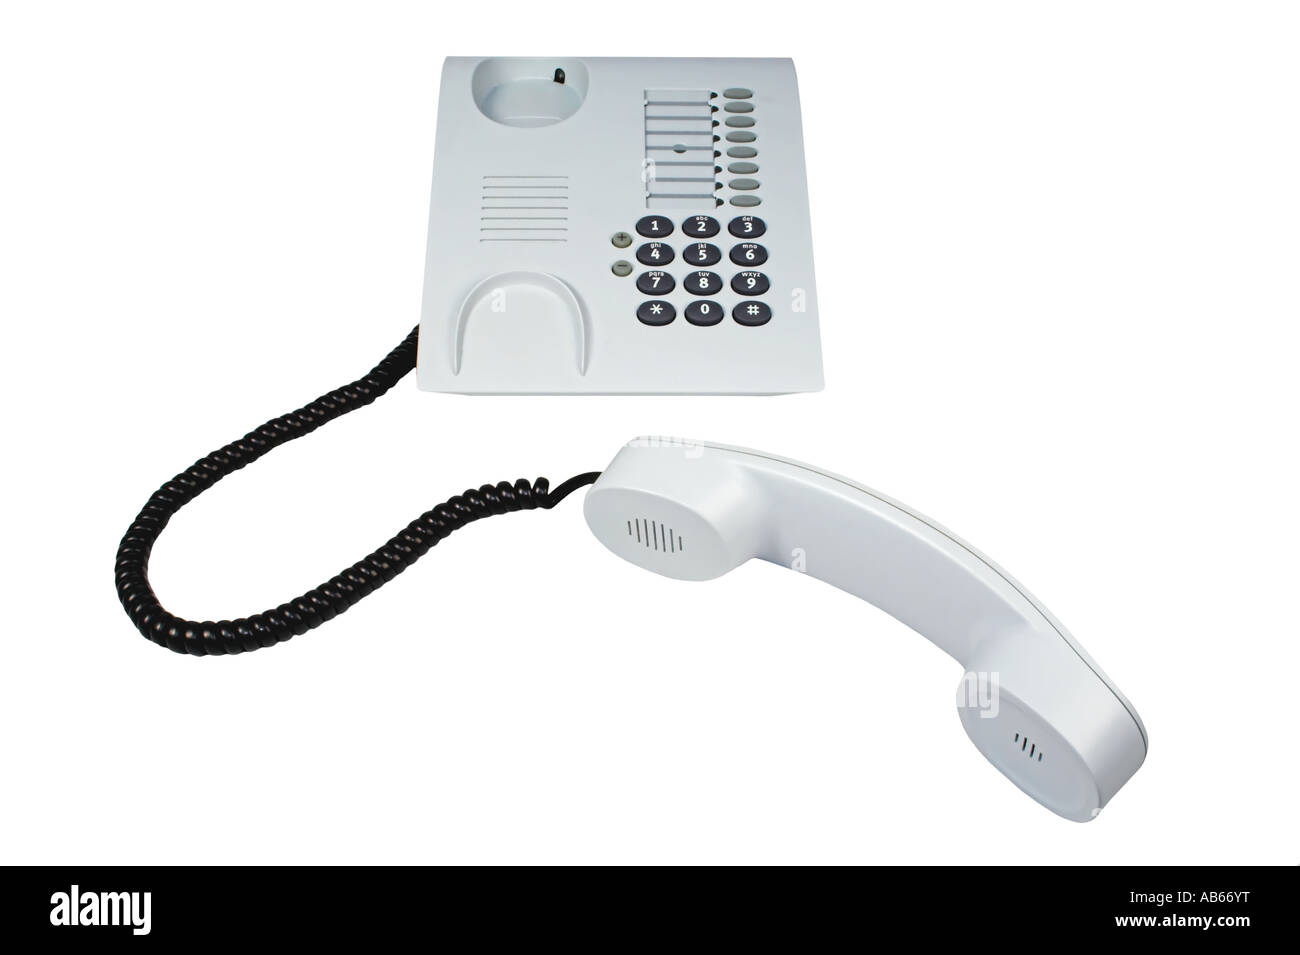 Detalle de una mano de mujer descolgando un teléfono blanco antiguo con  cable. Mano sosteniendo el auricular de un teléfono fijo de casa u oficina.  Concepto de atender una llamada telefónica. Stock